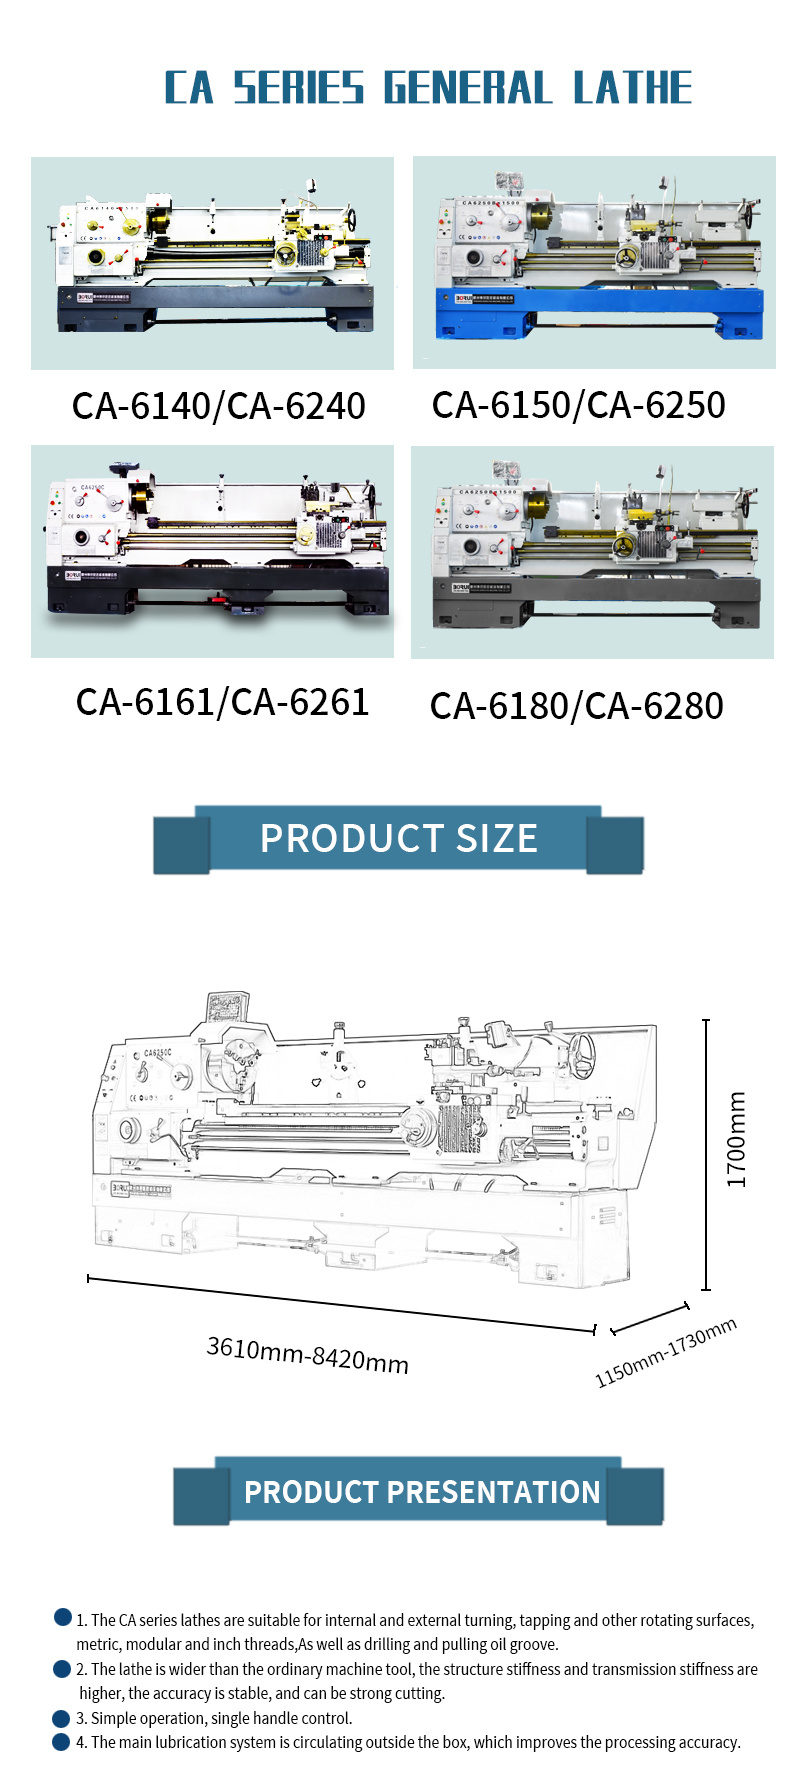 Ca6150 Universal Gap Bed Manual Turning Horizontal Metal Lathe Machine